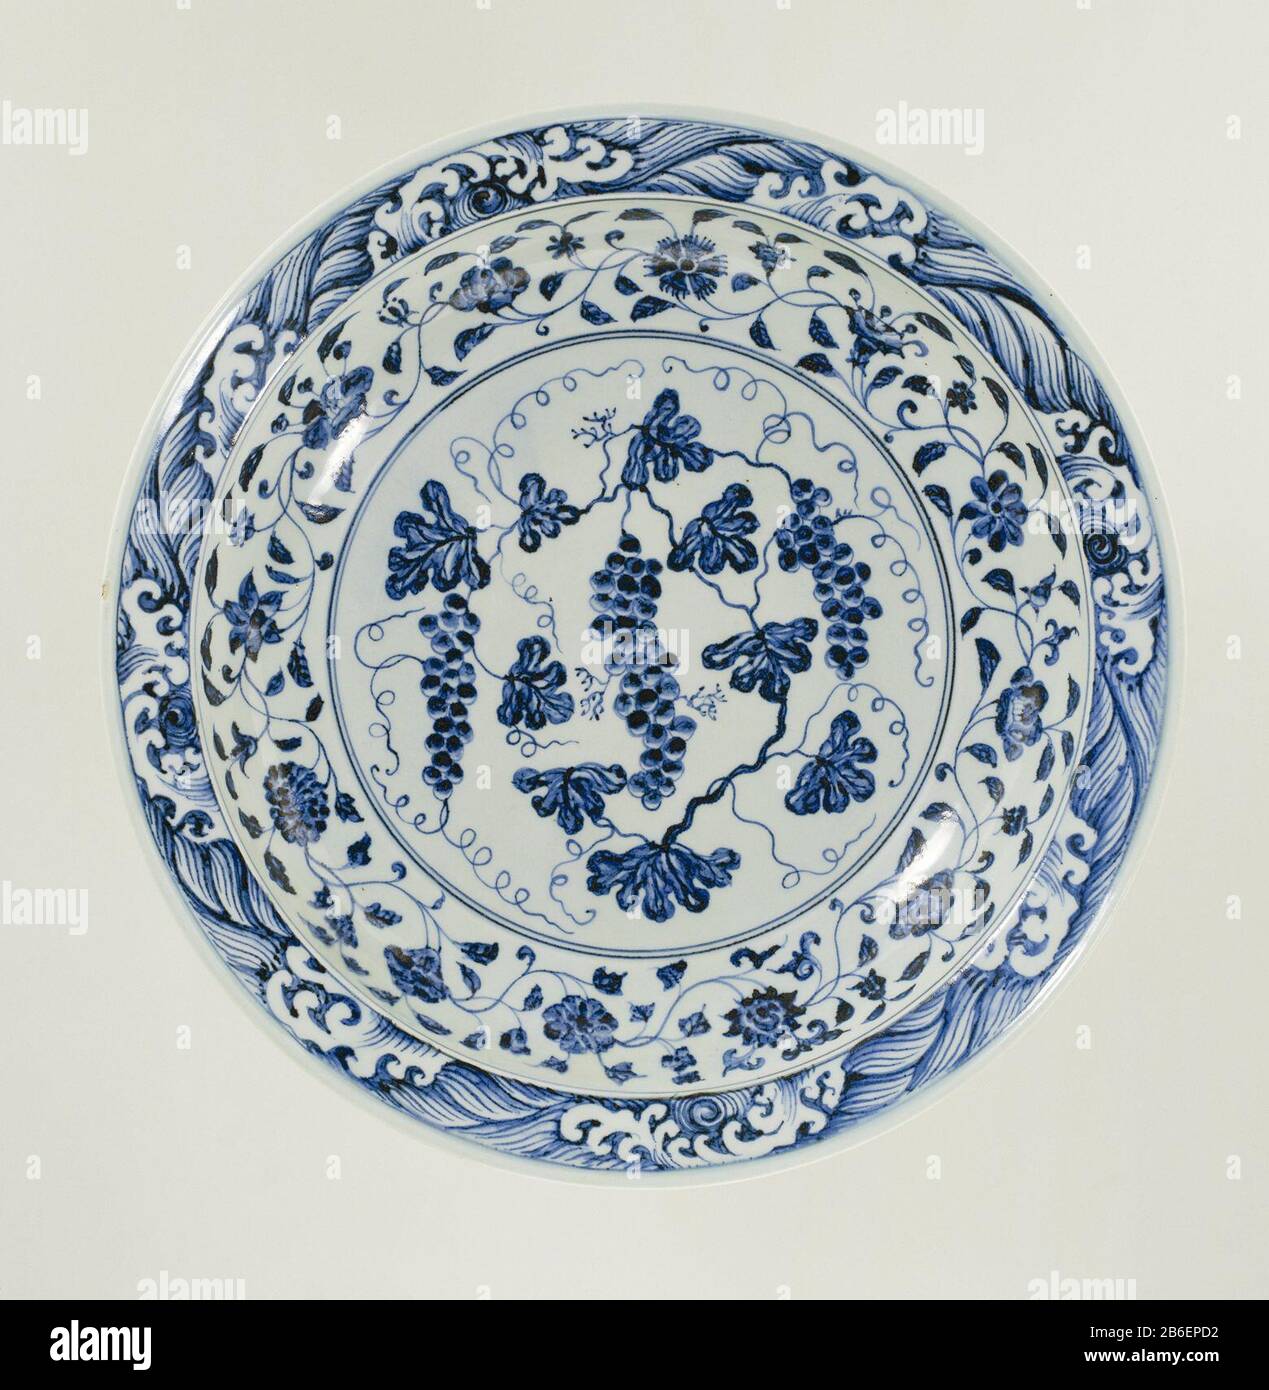 Dish plate with grapes and flower tendrils Schotel van porselein,  beschilderd in onderglazuur blauw. Op het plat een druivenrank. De wand met  een doorlopende bloemrank en de rand met een band met